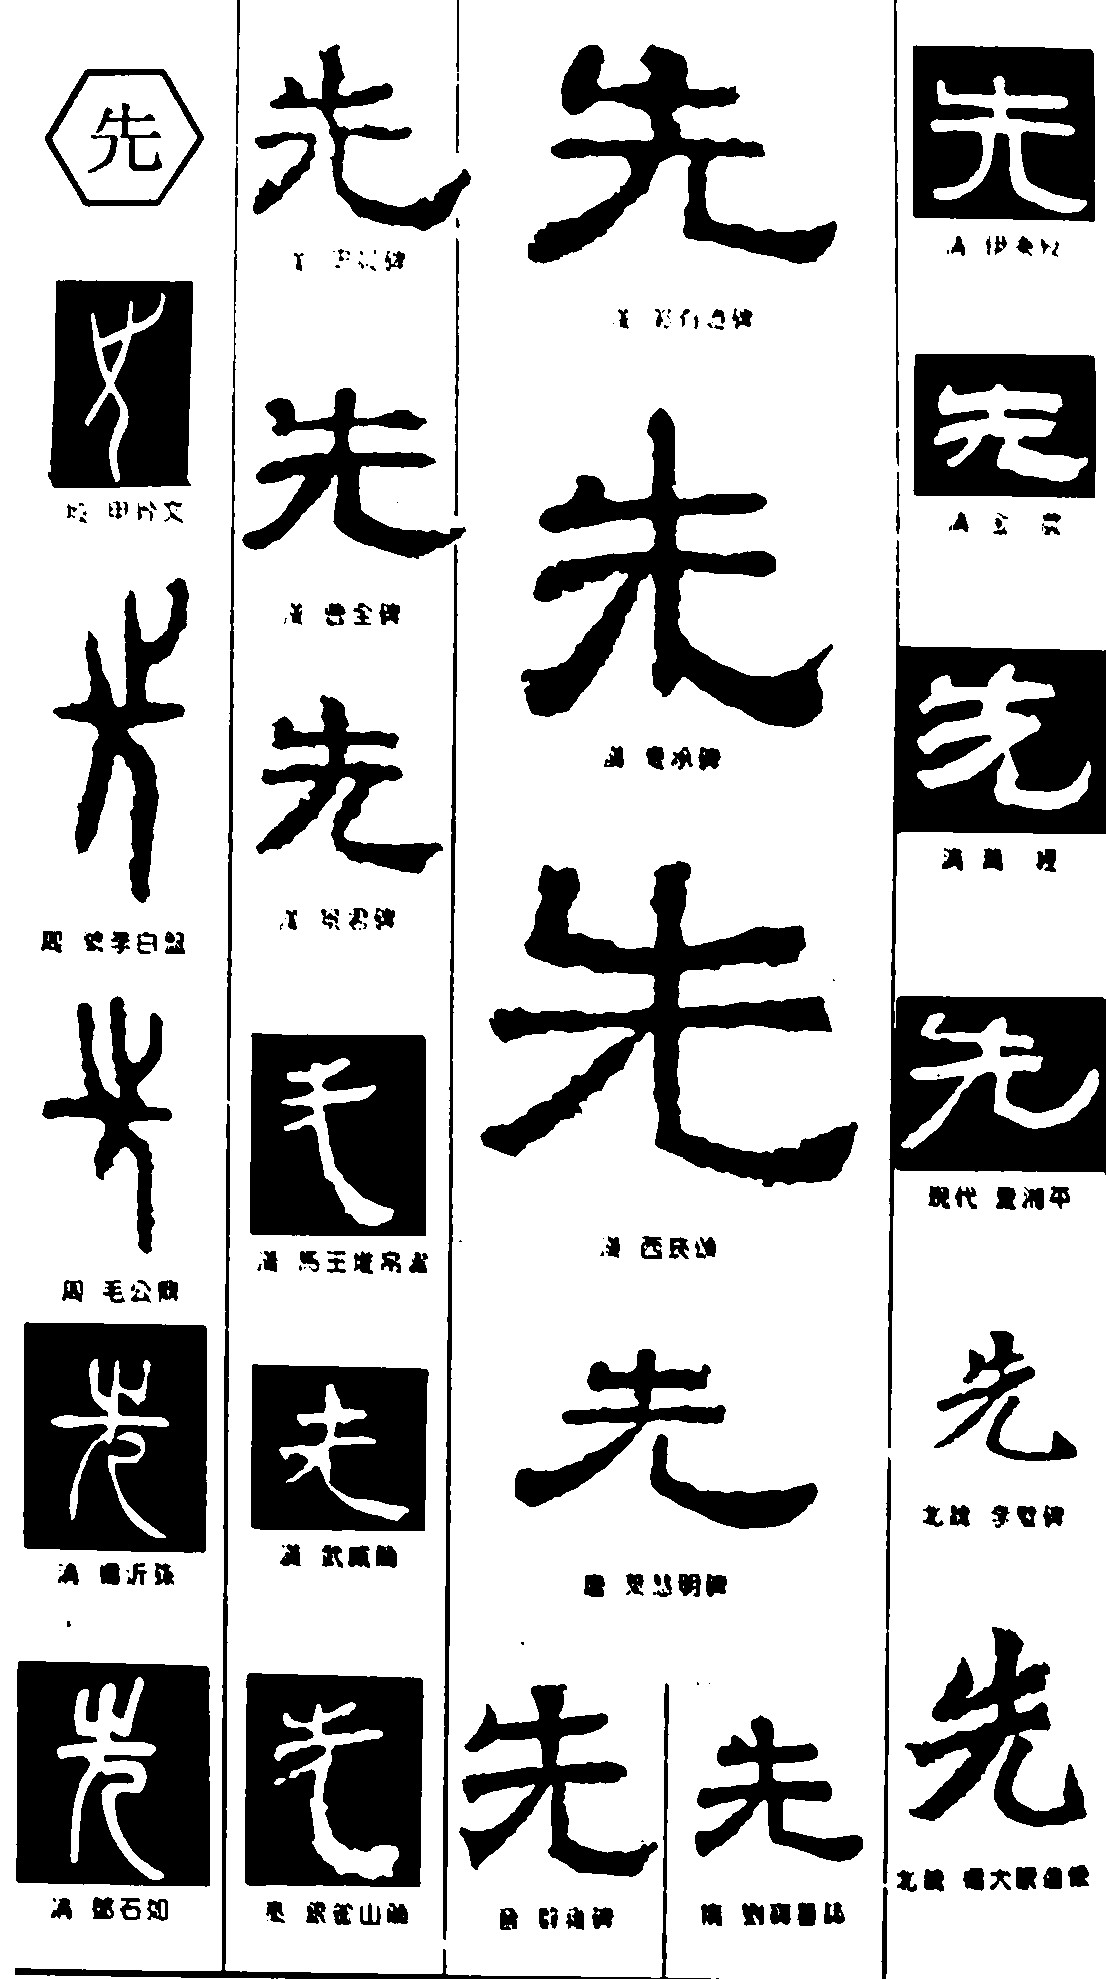 先 艺术字体_艺术字体设计_字体下载_中国书法字体,英文字体,吉祥物